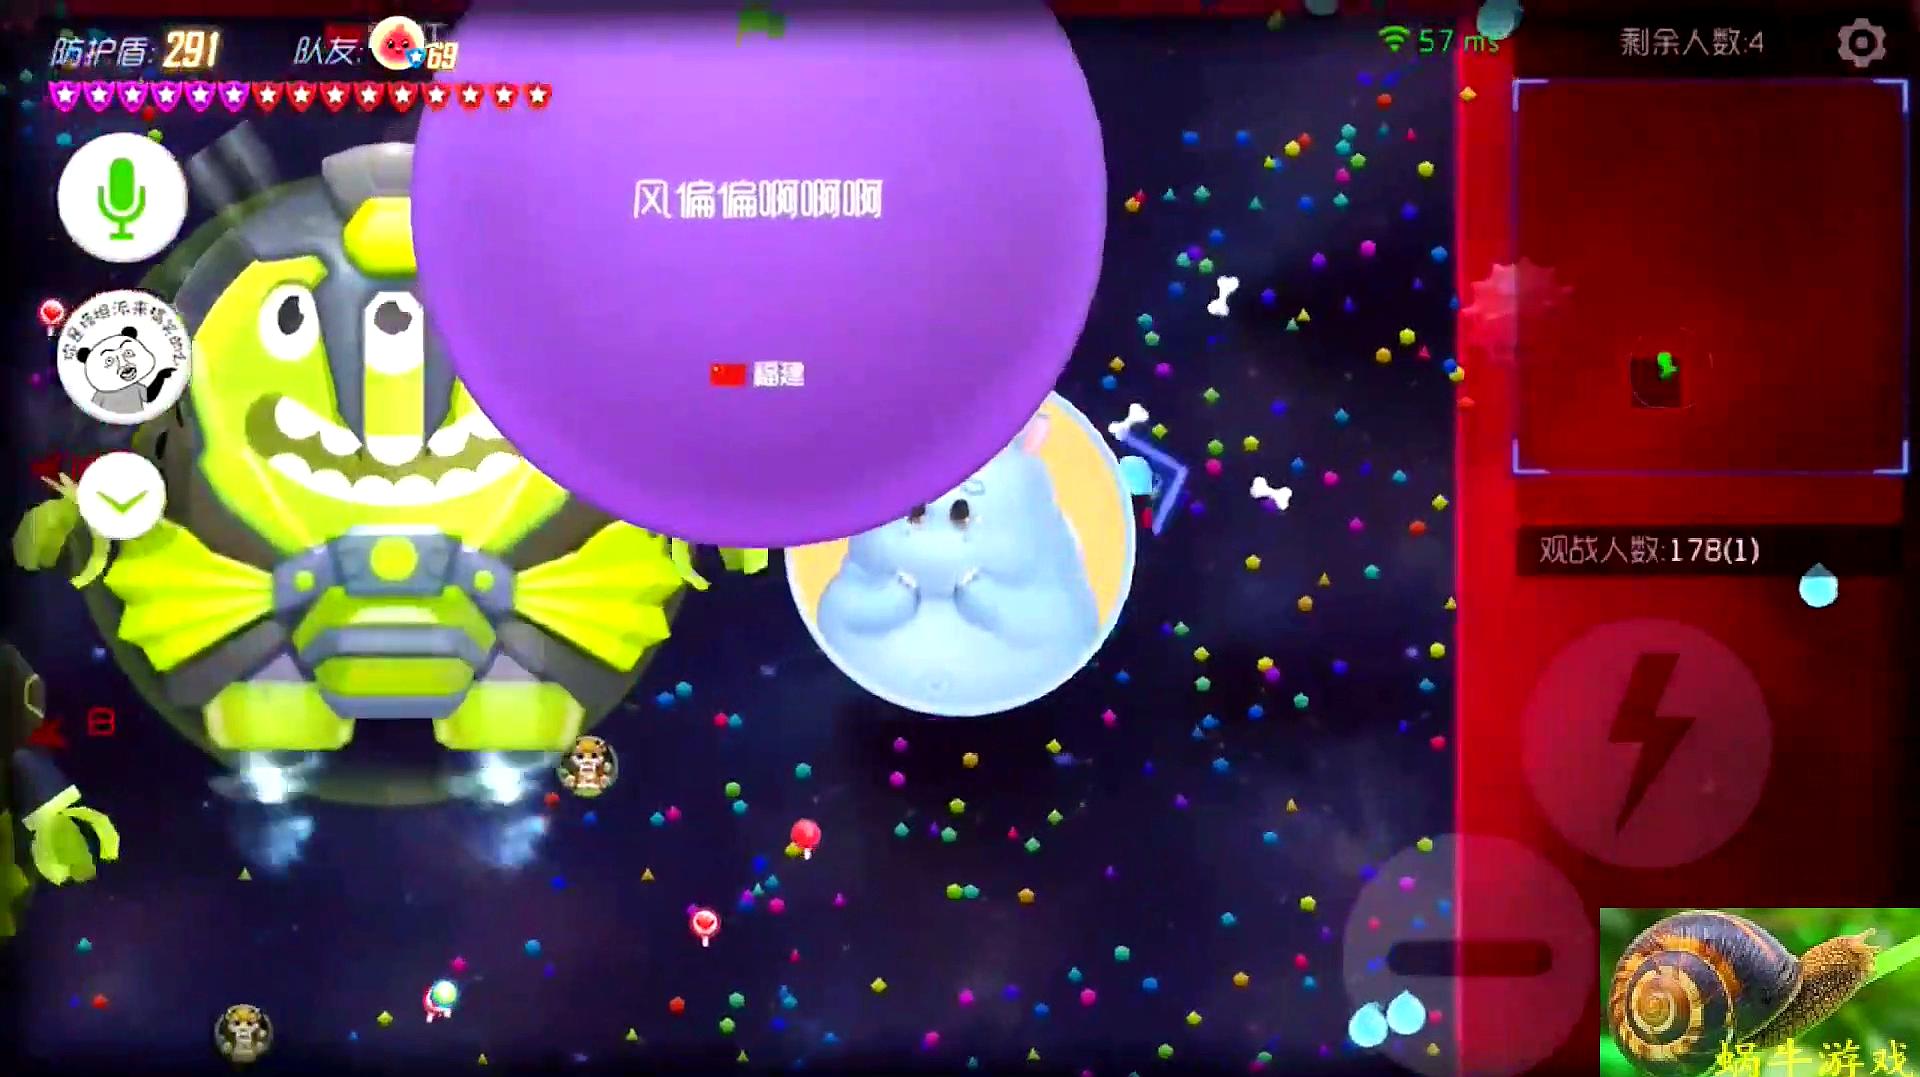 蜗牛游戏视频:休闲类游戏《球球大作战》的精彩视频合集(第1期)